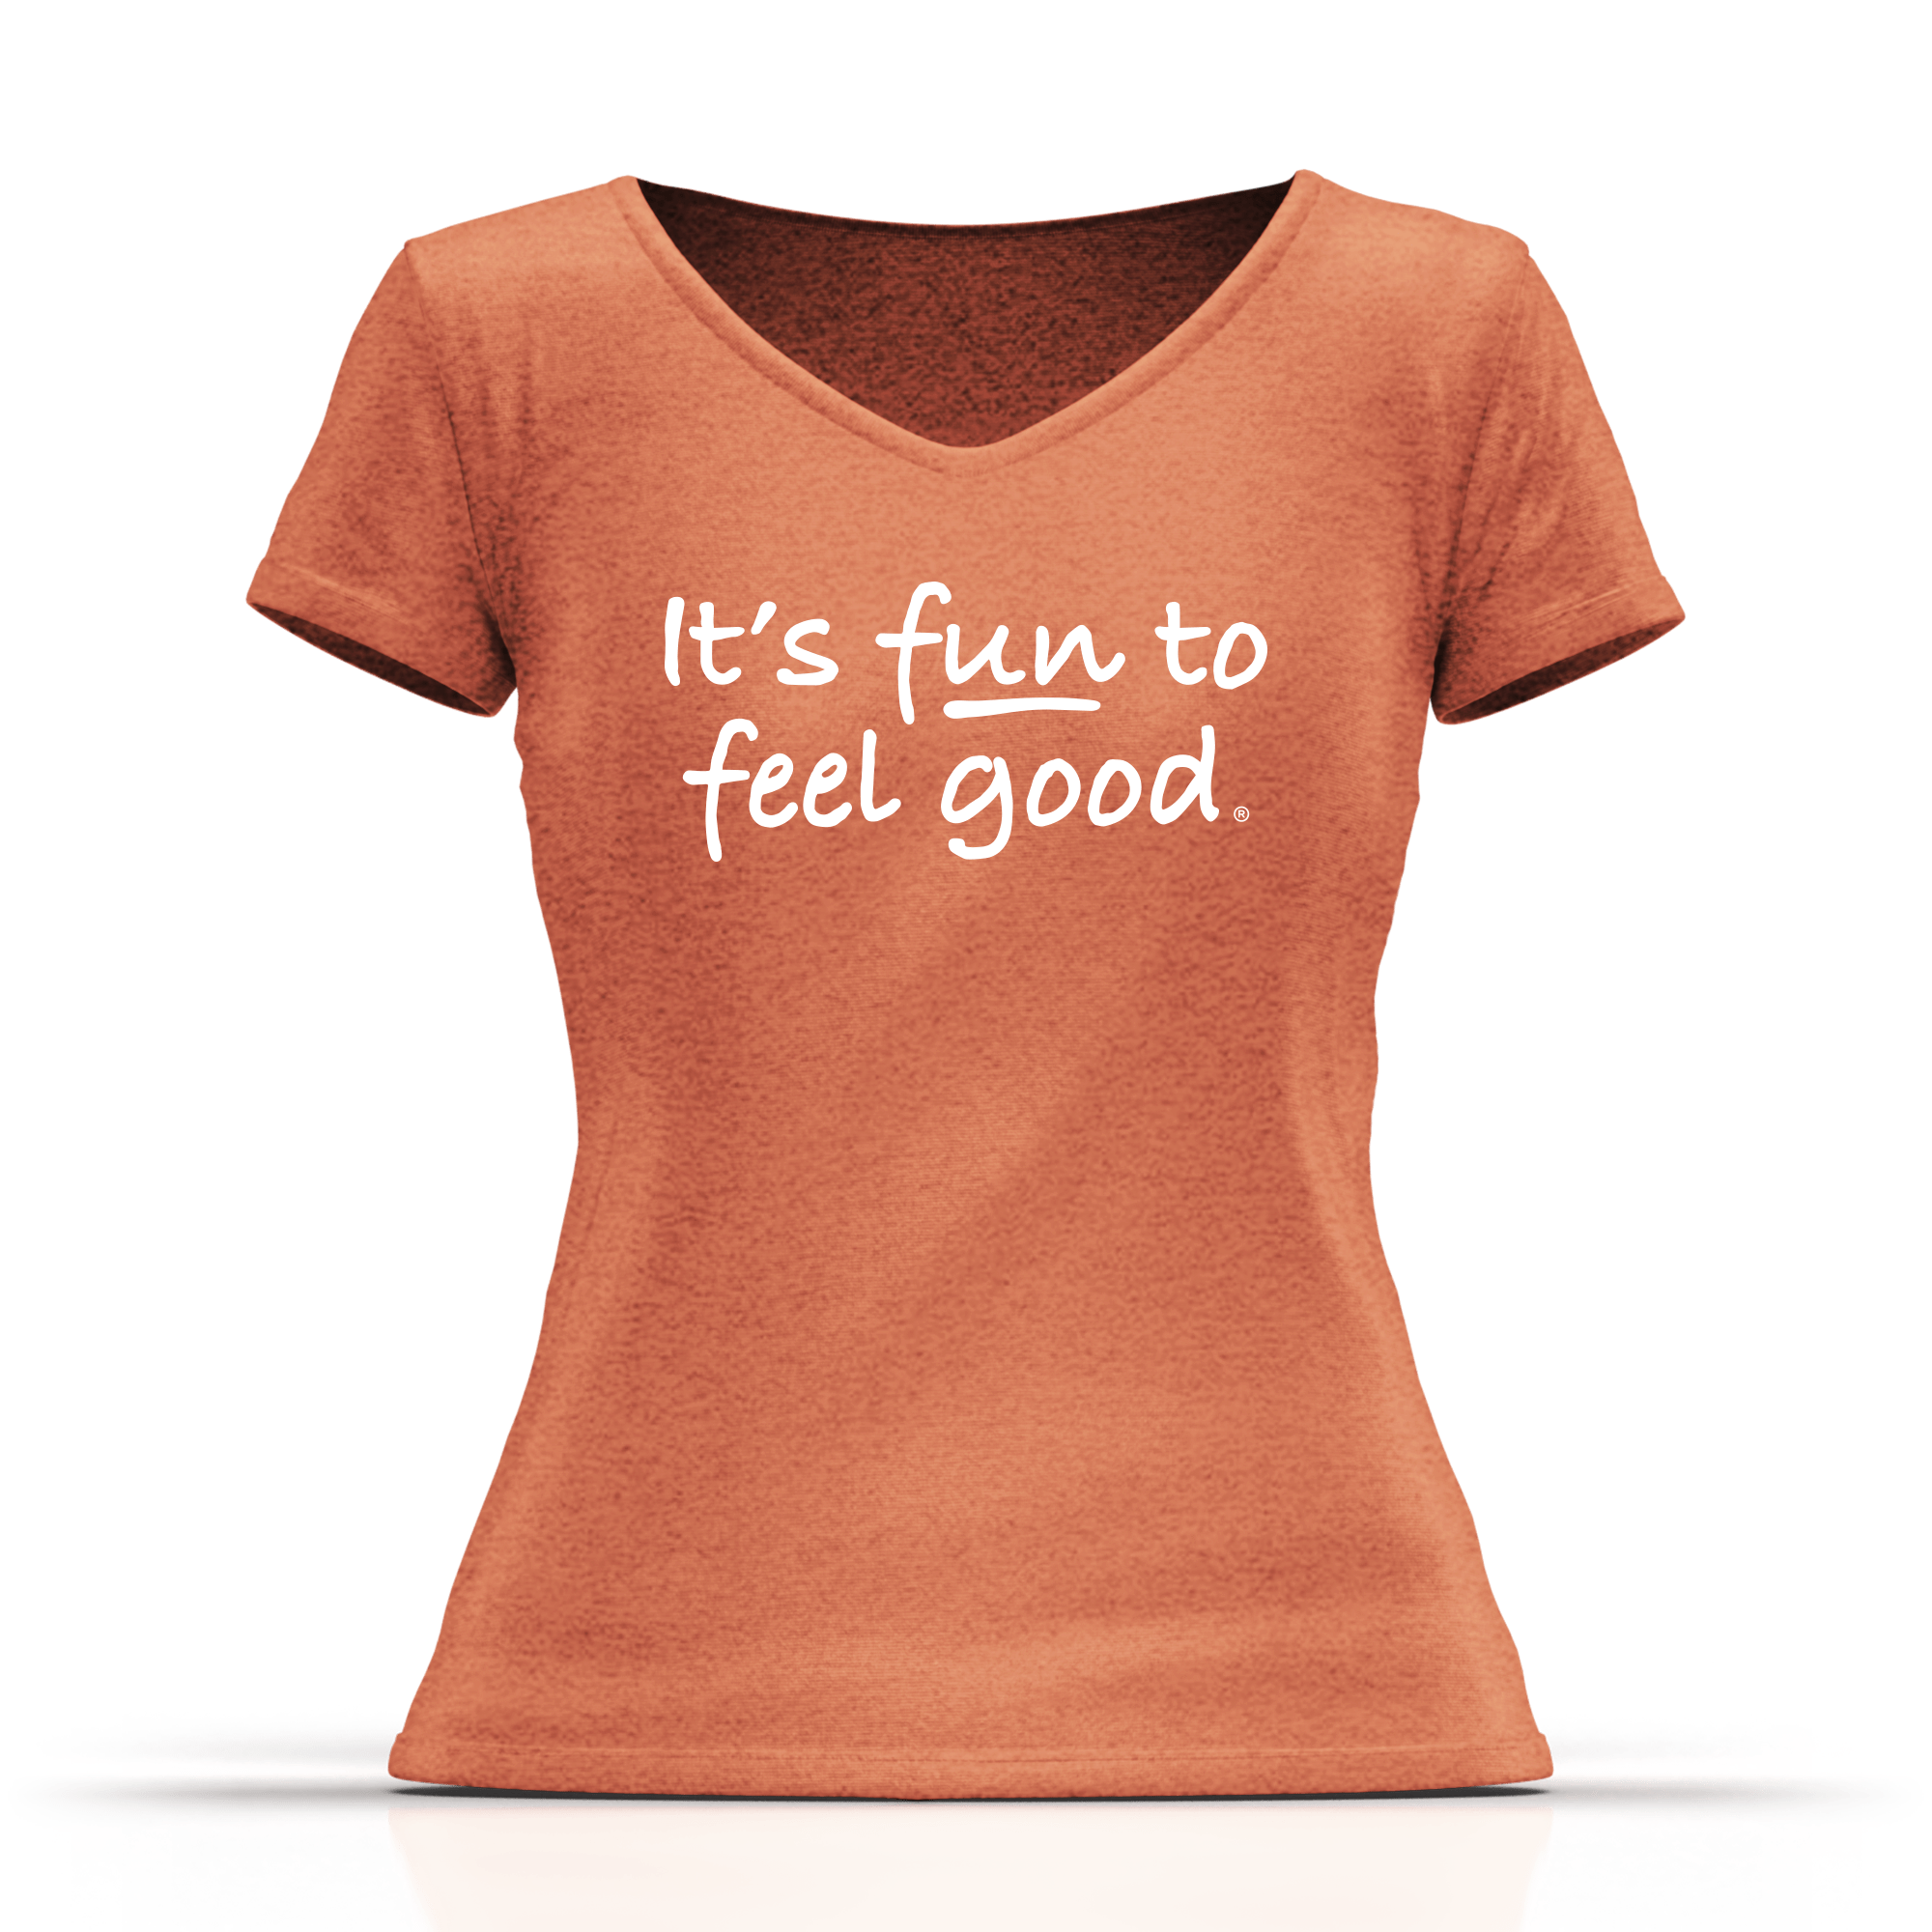 Women's Super Soft T-Shirt